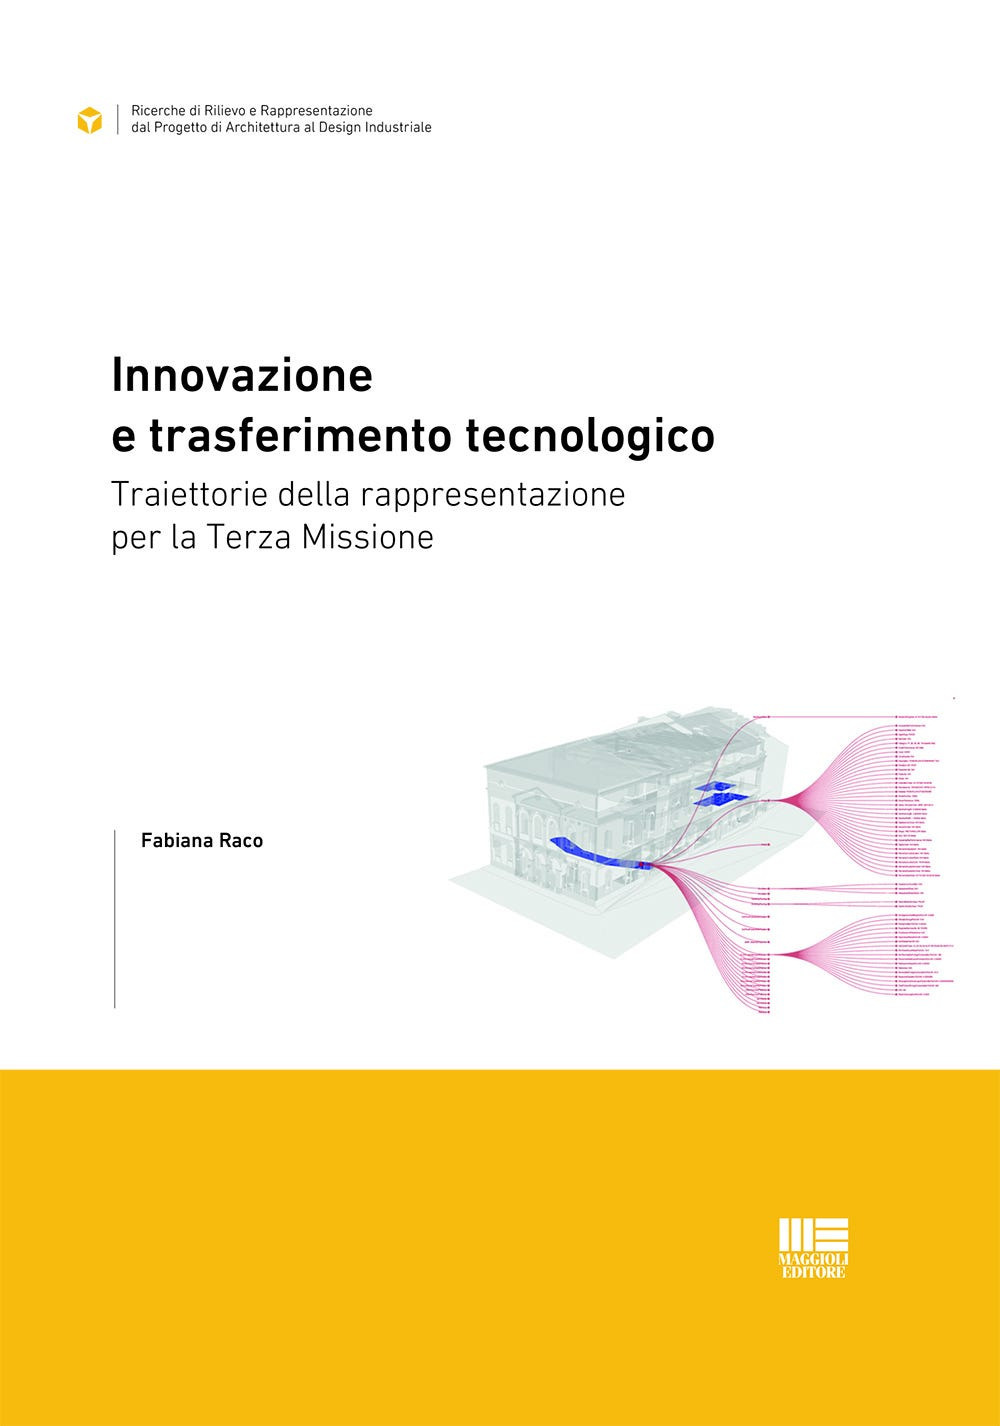 Innovazione e trasferimento tecnologico. Traiettorie della rappresentazione per la Terza Missione